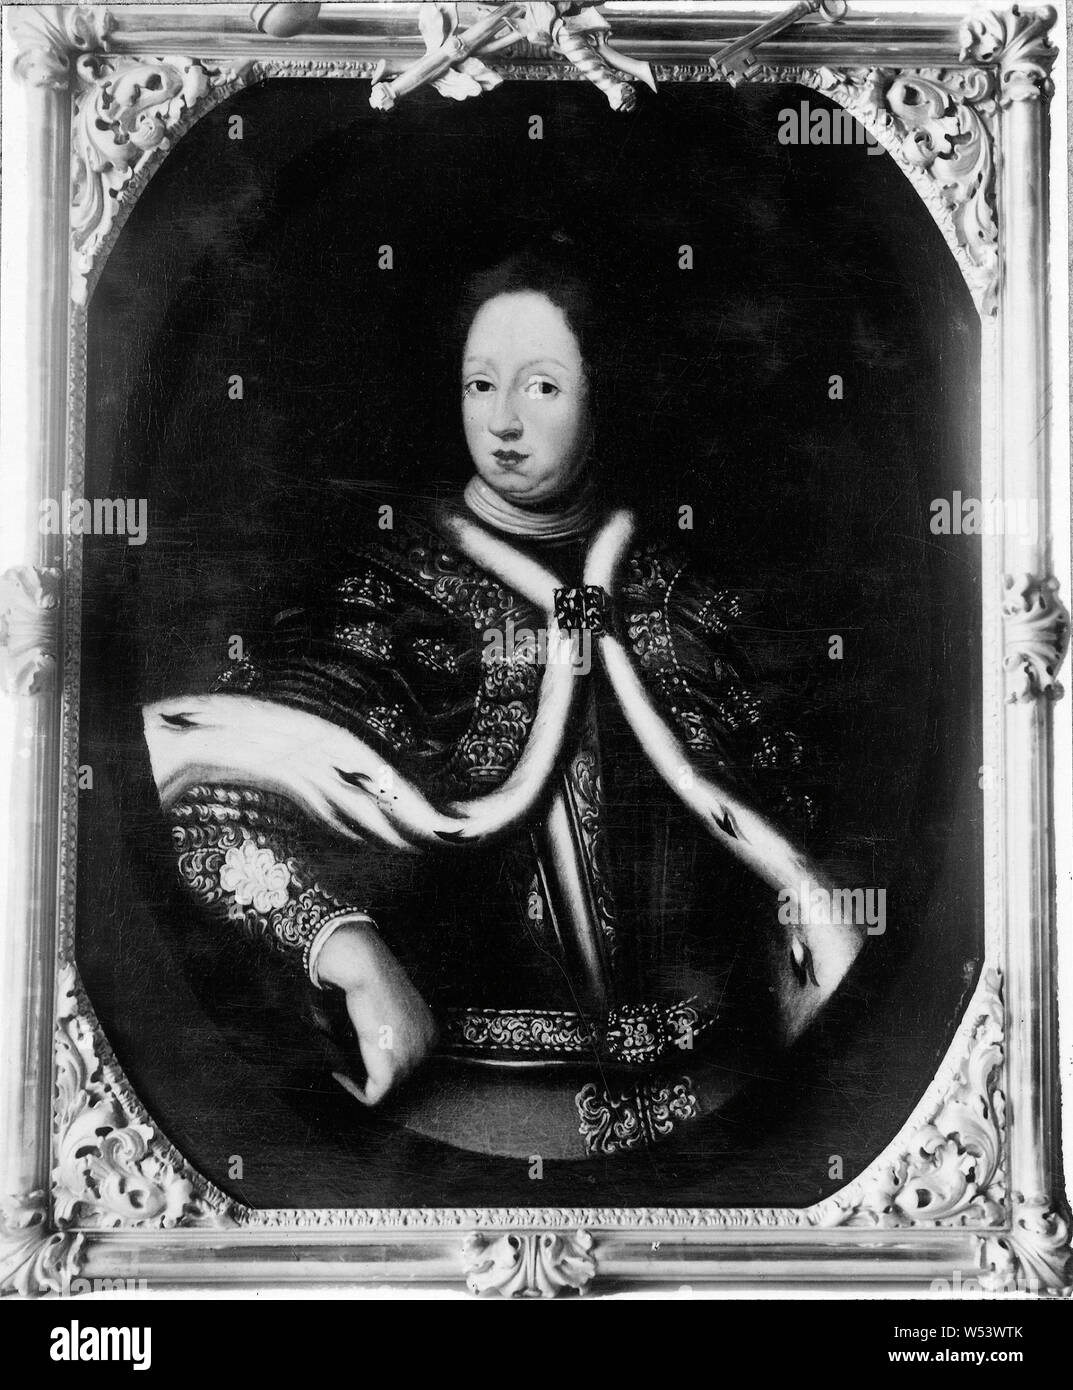 David Klöcker Ehrenstrahl, el Rey Karl XI, Karl XI, 1655-1697, el Rey de Suecia, pintura, Carlos XI de Suecia, aceite, altura 100 cm (39,3 pulgadas), ancho de 80 cm (31,4 pulgadas) Foto de stock